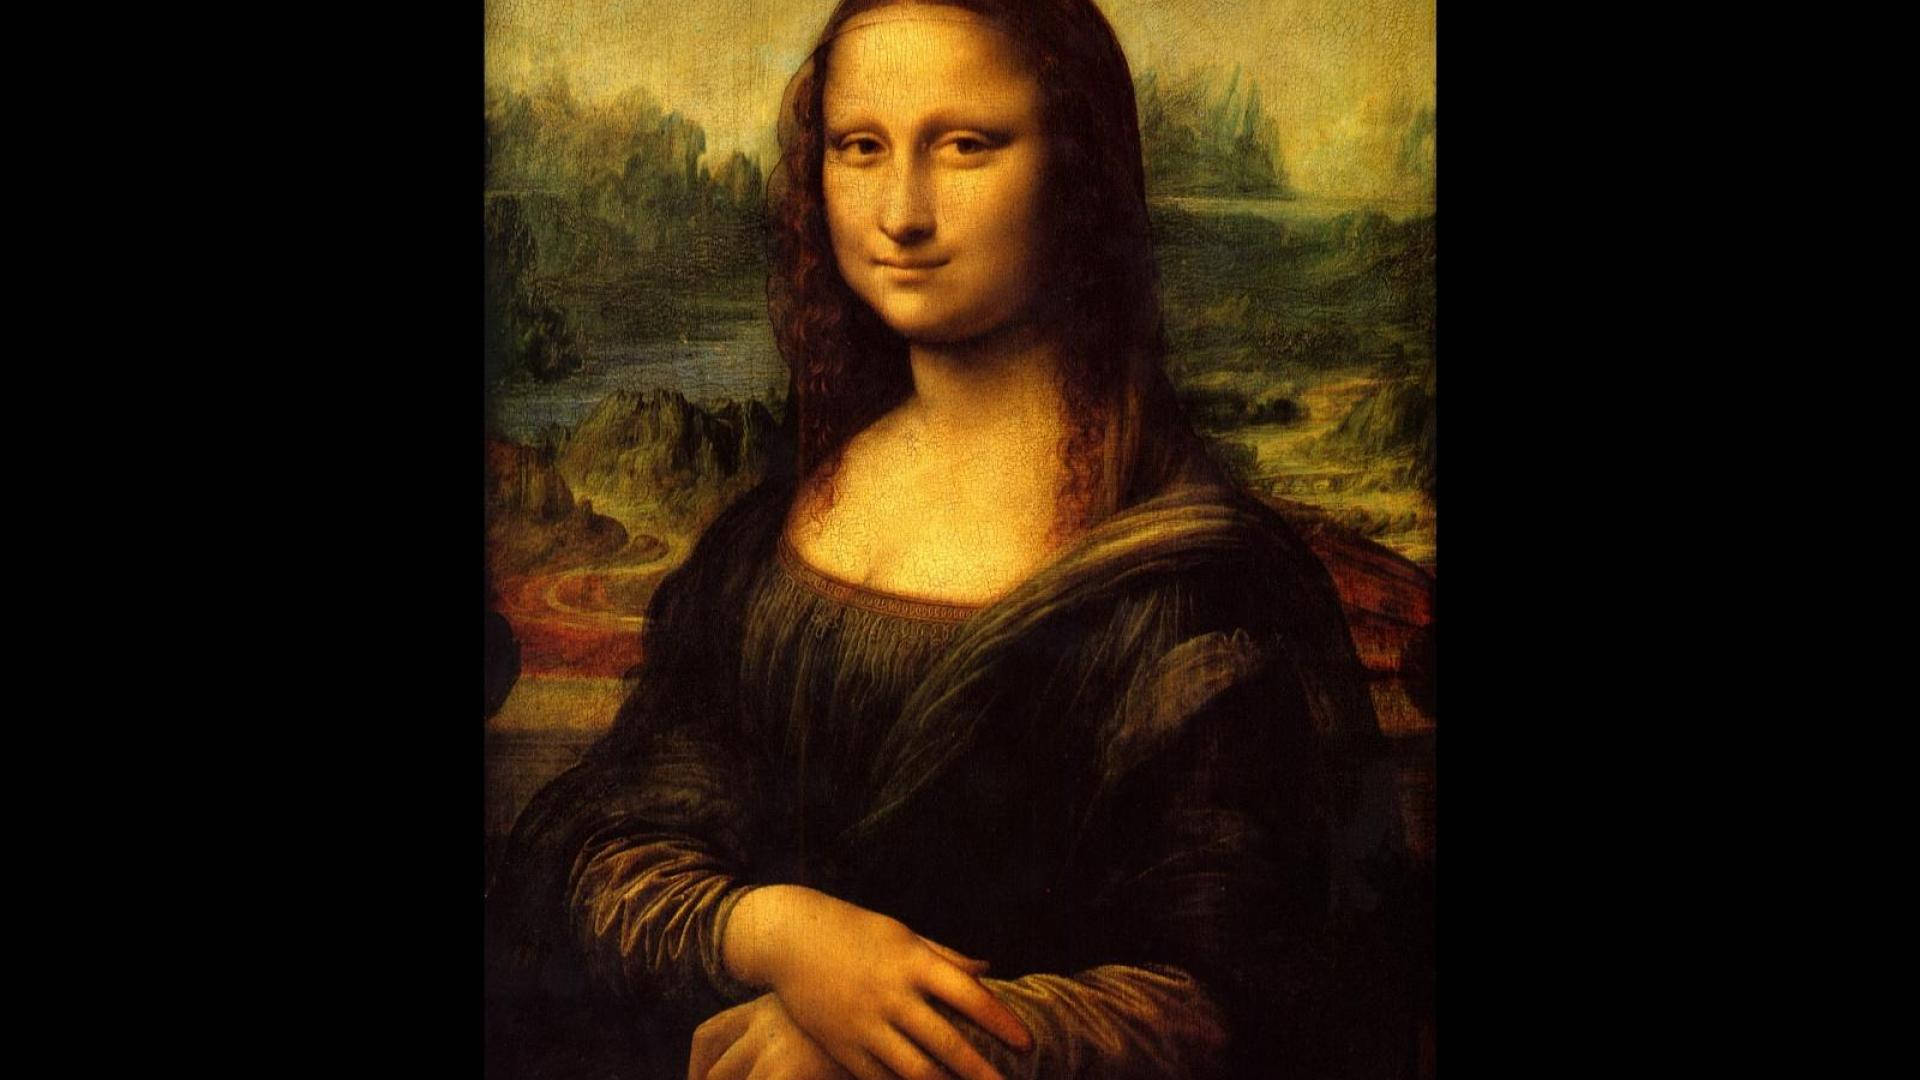 Caption: The Enigmatic Smile - Mona Lisa By Da Vinci Wallpaper